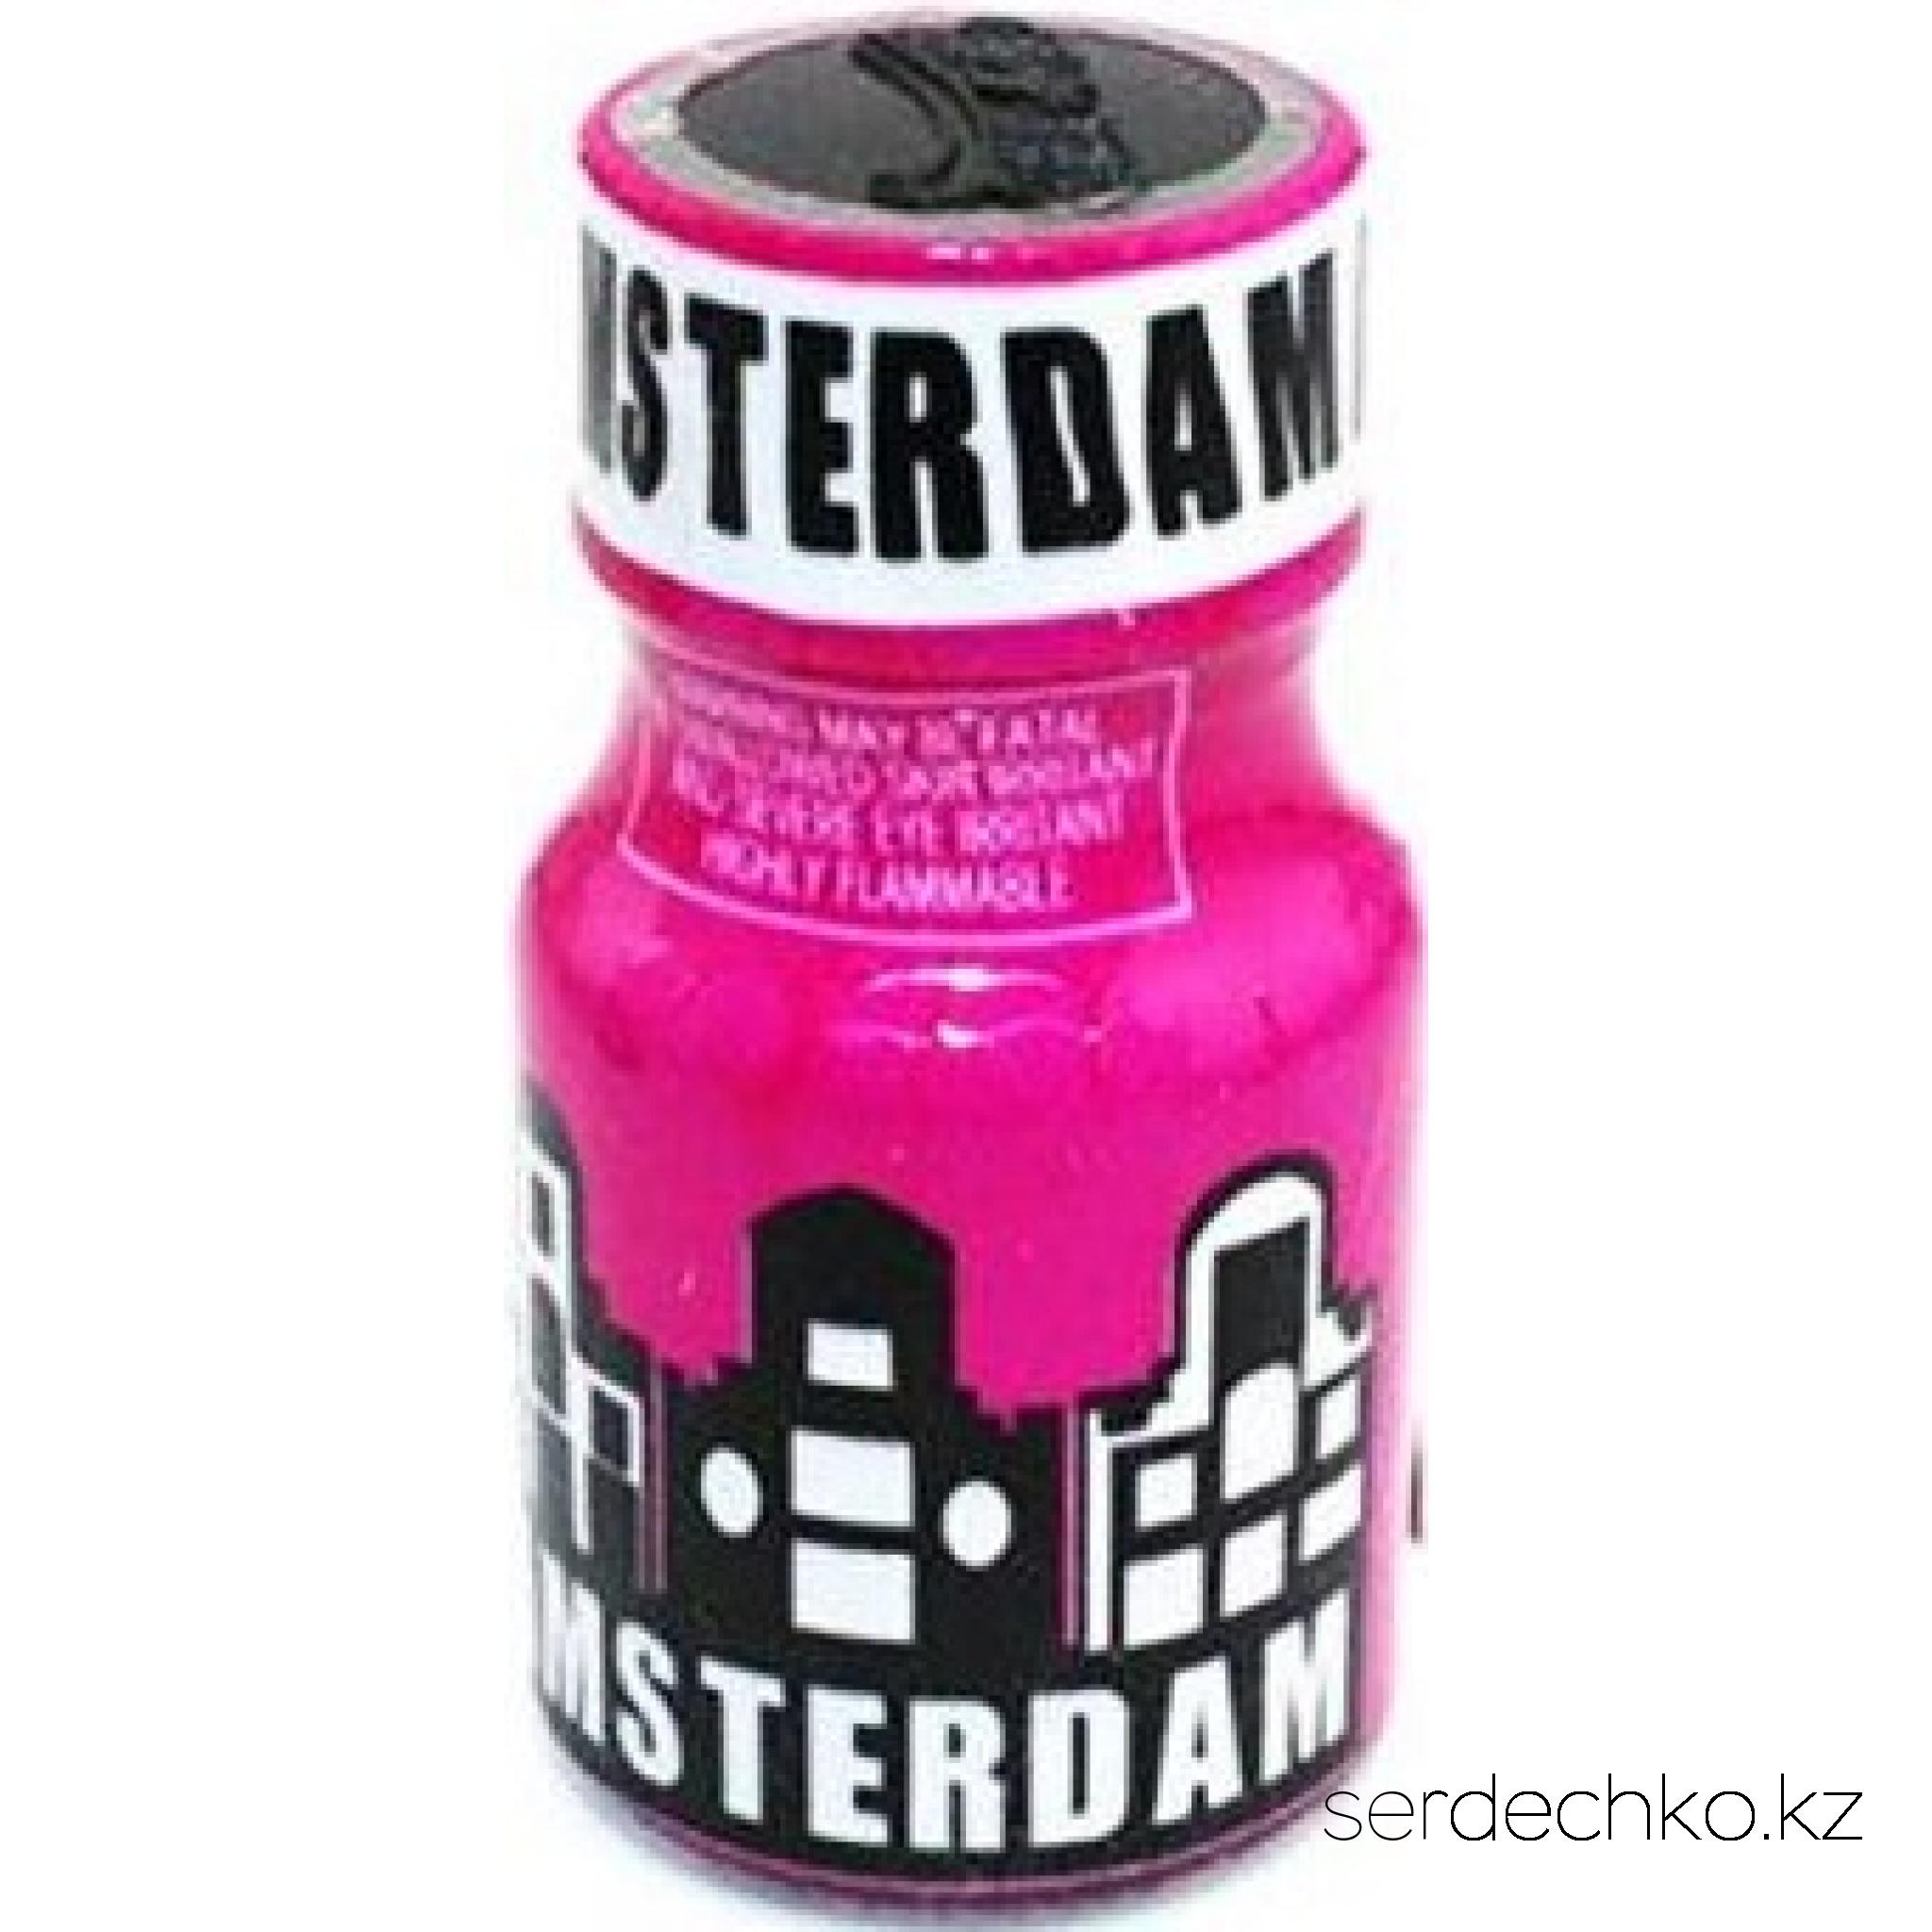 Попперс Amsterdam возбудитель,10 мл, 
	Попперс "Amsterdam"

	Попперс Amsterdam - один из самых знаменитых попперсов, способный перенести вас в ночной город плотских наслаждений! Особый тонкий аромат дарит чувственность и разнеженность, пробуждает самые сильные эмоции и разрушает границы стыда!

	Этот высококачественный  продукт предназначен для истинных ценителей наслаждения, ведь объемный флакон позволяет наслаждаться погружающим в волшебство ароматом необычайно долго. Мягкий эффект, обострение ощущений и самое благостное настроение помогут вам любить, как никогда прежде!

	Amsterdam  это лучший способ почувствовать всю прелесть секса, забыть о рамках и ограничениях, подарить своему телу настоящий экстаз и феерию красок чувственной и долгой близости! Ваше наслаждение всегда должно быть изысканным!

	Полная расслабленность, комфорт и сильнейшее сексуальное желание сделают ваш вечер незабываемым и удивительным!

	Преимущества:

	·        попперс усиливает тактильные ощущения;

	·        дарит чувство расслабления, успокоение и релаксацию;

	·        заряд сексуальной мощи;

	·        снимает  психическое и физическое напряжение;

	·        устраняет скованность движений;

	·        убирает психологические барьеры;

	·        в одинаковой степени приносит удовольствие и мужчинам, и женщинам.

	·        усиливает и продлевает оргазм -  действие более сильное и продолжительное.

	                                

	Инструкция по применению:

	Поставьте открытый флакон в помещении, путем испарения летучих веществ попперса, воздух в комнате наполнится интенсивно пахнущим благоуханием. Так же можно вылить часть содержимого из флакона на блюдце для увеличения площади испарения. Действие попперса ощущается примерно через 10-15 минут после наполнения комнаты ароматом.

	
		вдыхание (носом) из бутылочки;
	
		через специальную маску-ингалятор;
	
		перелить в блюдце или оставить флакон открытым.


	Одну бутылочки на 10 мл, как правило, можно использовать до 1 месяца (применяя 3-4 раза в неделю). Одной бутылочки хватает примерно на 200 применений.

	После использования производители не рекомендуют садиться сразу же за руль автомобиля.  Следует не много подождать или выпить большое количество тёплой воды.

	Противопоказания:

	·        не принимать внутрь (НЕЛЬЗЯ!);

	·        не применять попперсы людям страдающим сердечно-сосудистой недостаточностью, гипертонией, анемией, глаукомой;

	·         не принимать с другими секс-стимуляторами, такими как циалис, виагра и другие стимуляторы для мужчин;

	·        не принимать беременным, кормящим;

	·        не принимать лицам до 18лет;

	·        не  наносить попперсы на участки кожи или слизистую оболочку, из-за опасности ожогов;

	·        не оставлять под прямыми солнечными лучами;

	·        не нагревать (то есть беречь от контакта со спичками, зажигалками, горящей сигаретой и тому подобное), т.к. содержат легковоспламеняющиеся вещества.

	 Условия хранения:

	Попперс должен хранится при особых условиях. Прохладное темное место, такое как холодильник, обеспечит ему сохранность до 5 лет, при вскрытой бутылочке препарат продержится несколько недель. Температура должна быть в пределах +3°C. Закрытым и открытым баночкам необходимо обеспечить одинаковое условие хранения, поэтому стоит их хранить вместе. Если вы хотите воспользоваться попперсом и только вынули его их холодильника, то не спешите открывать, чтобы не возник конденсат на стенках флакона, он должен согреться до комнатной температуры (не нагревать самостоятельно).

	Объём: 10 мл.

	ОсновныеОбъем10 мл Страна производитель США Пол Унисекс Дополнительный эффект Расслабление мышц, Пролонгирующий эффект, Возбуждающий, Увеличение чувствительности Возраст   18+Форма выпуска Жидкость
